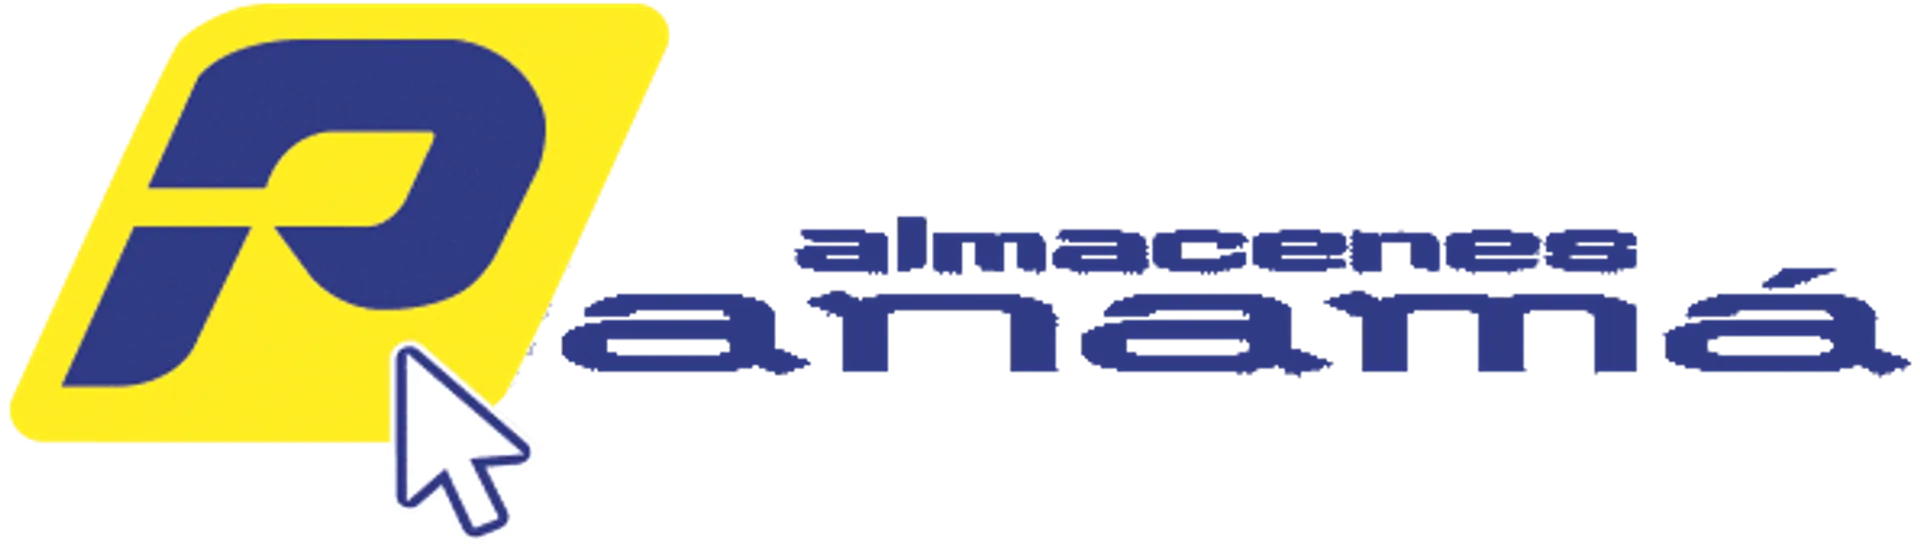 ALMACENES PANAMÁ logo de catálogo